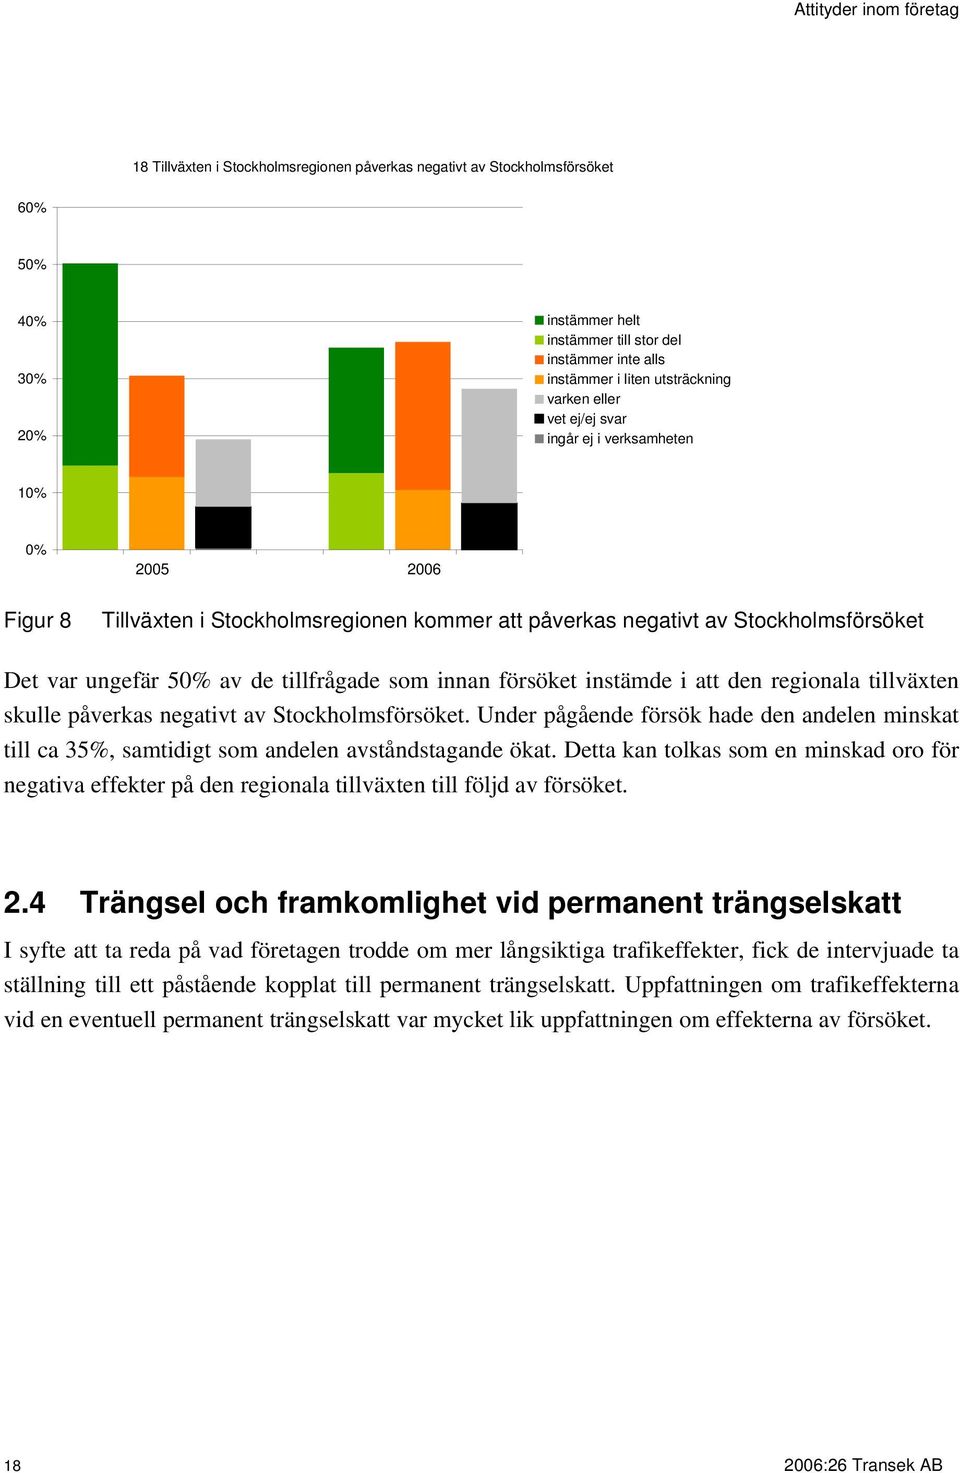 tillväxten skulle påverkas negativt av Stockholmsförsöket. Under pågående försök hade den andelen minskat till ca 35%, samtidigt som andelen avståndstagande ökat.